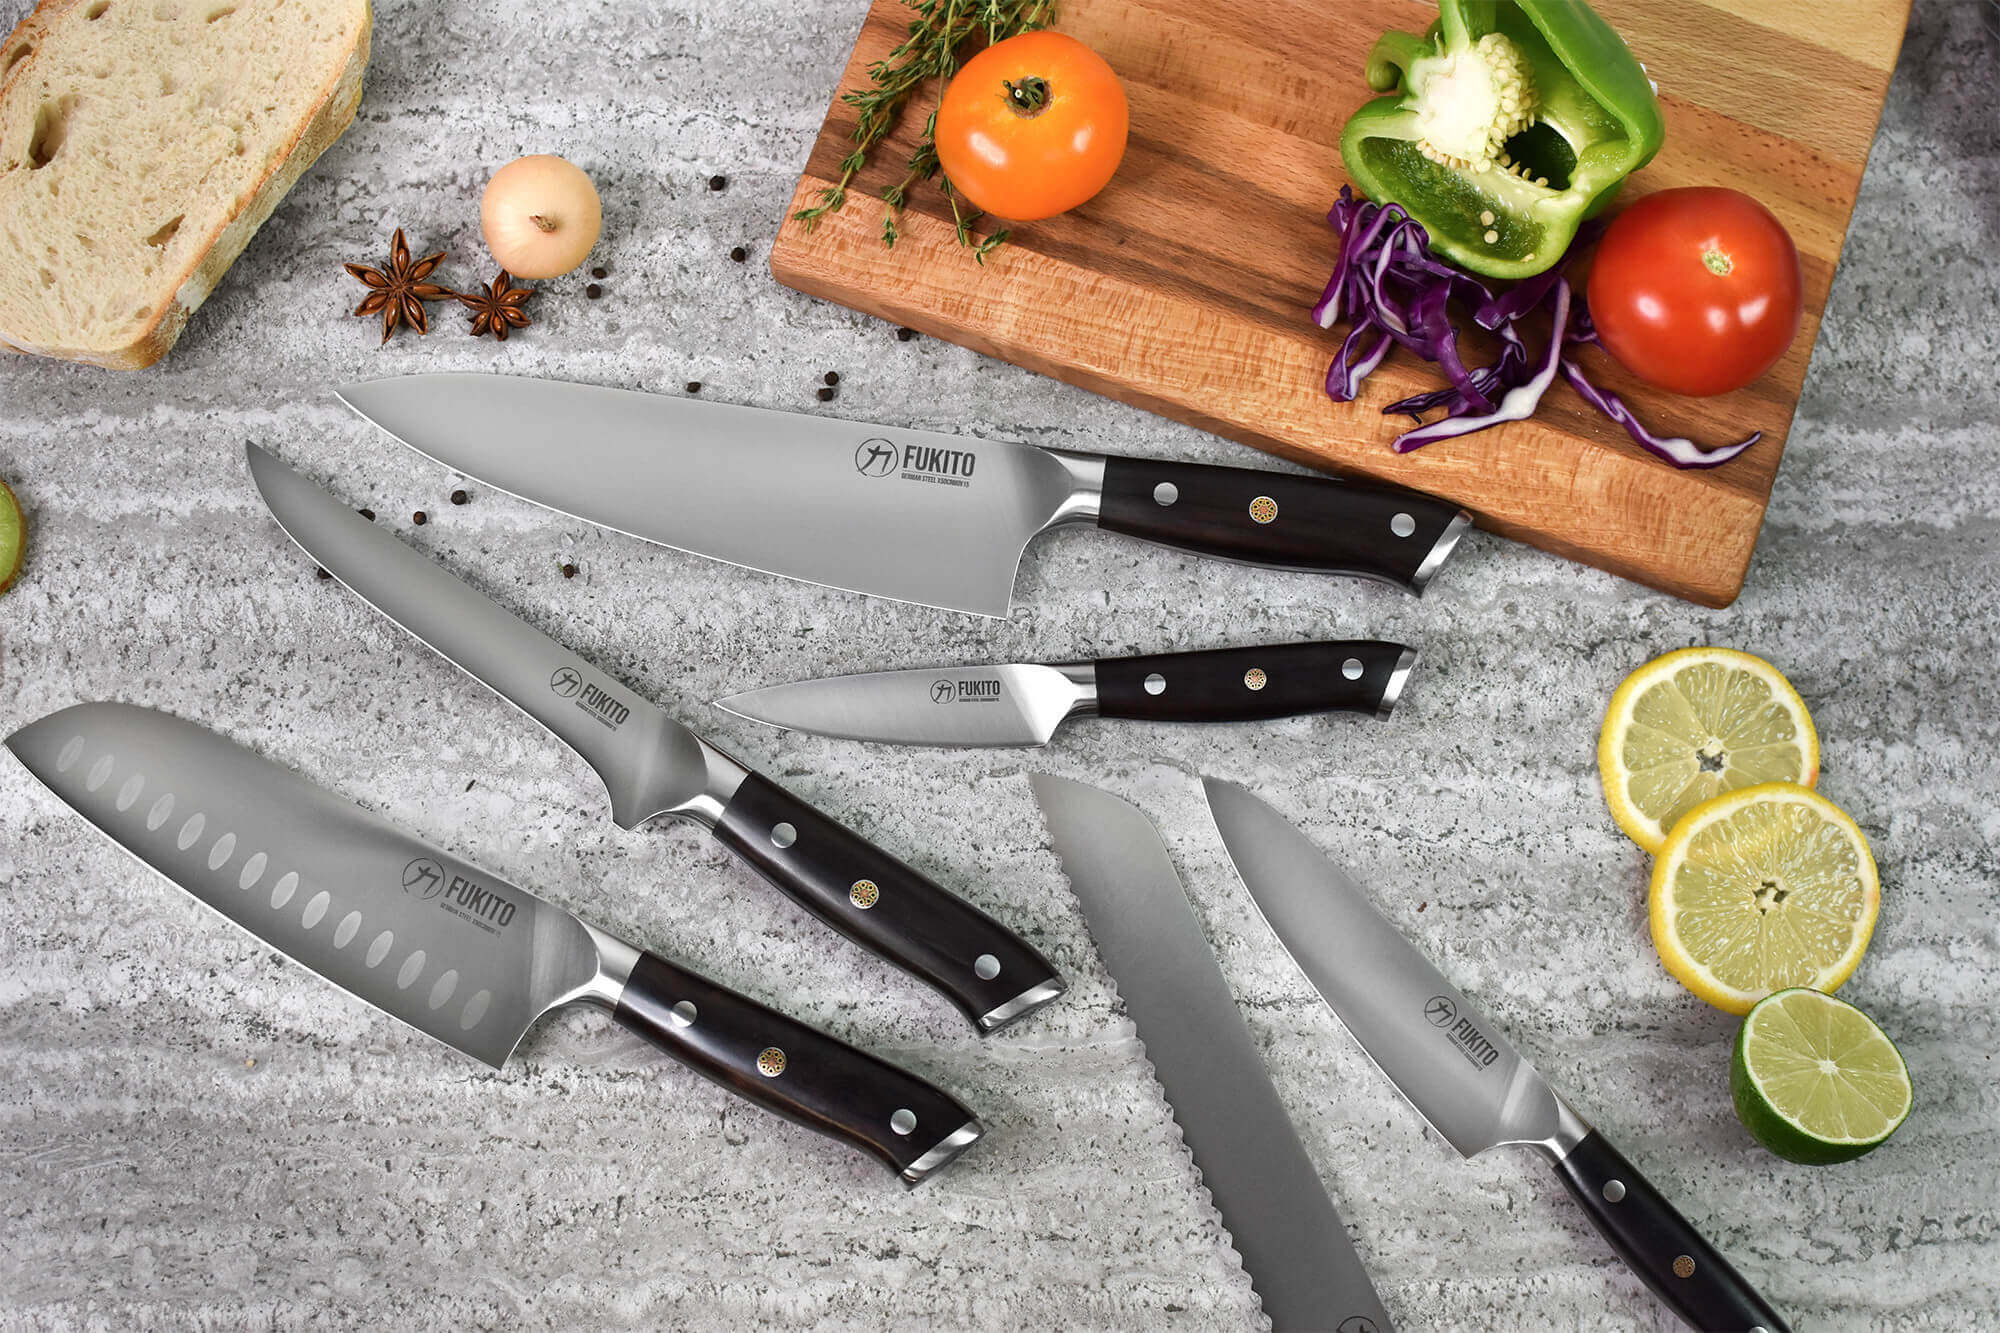 Boutique officielle des couteaux de cuisine Fukito haut de gamme